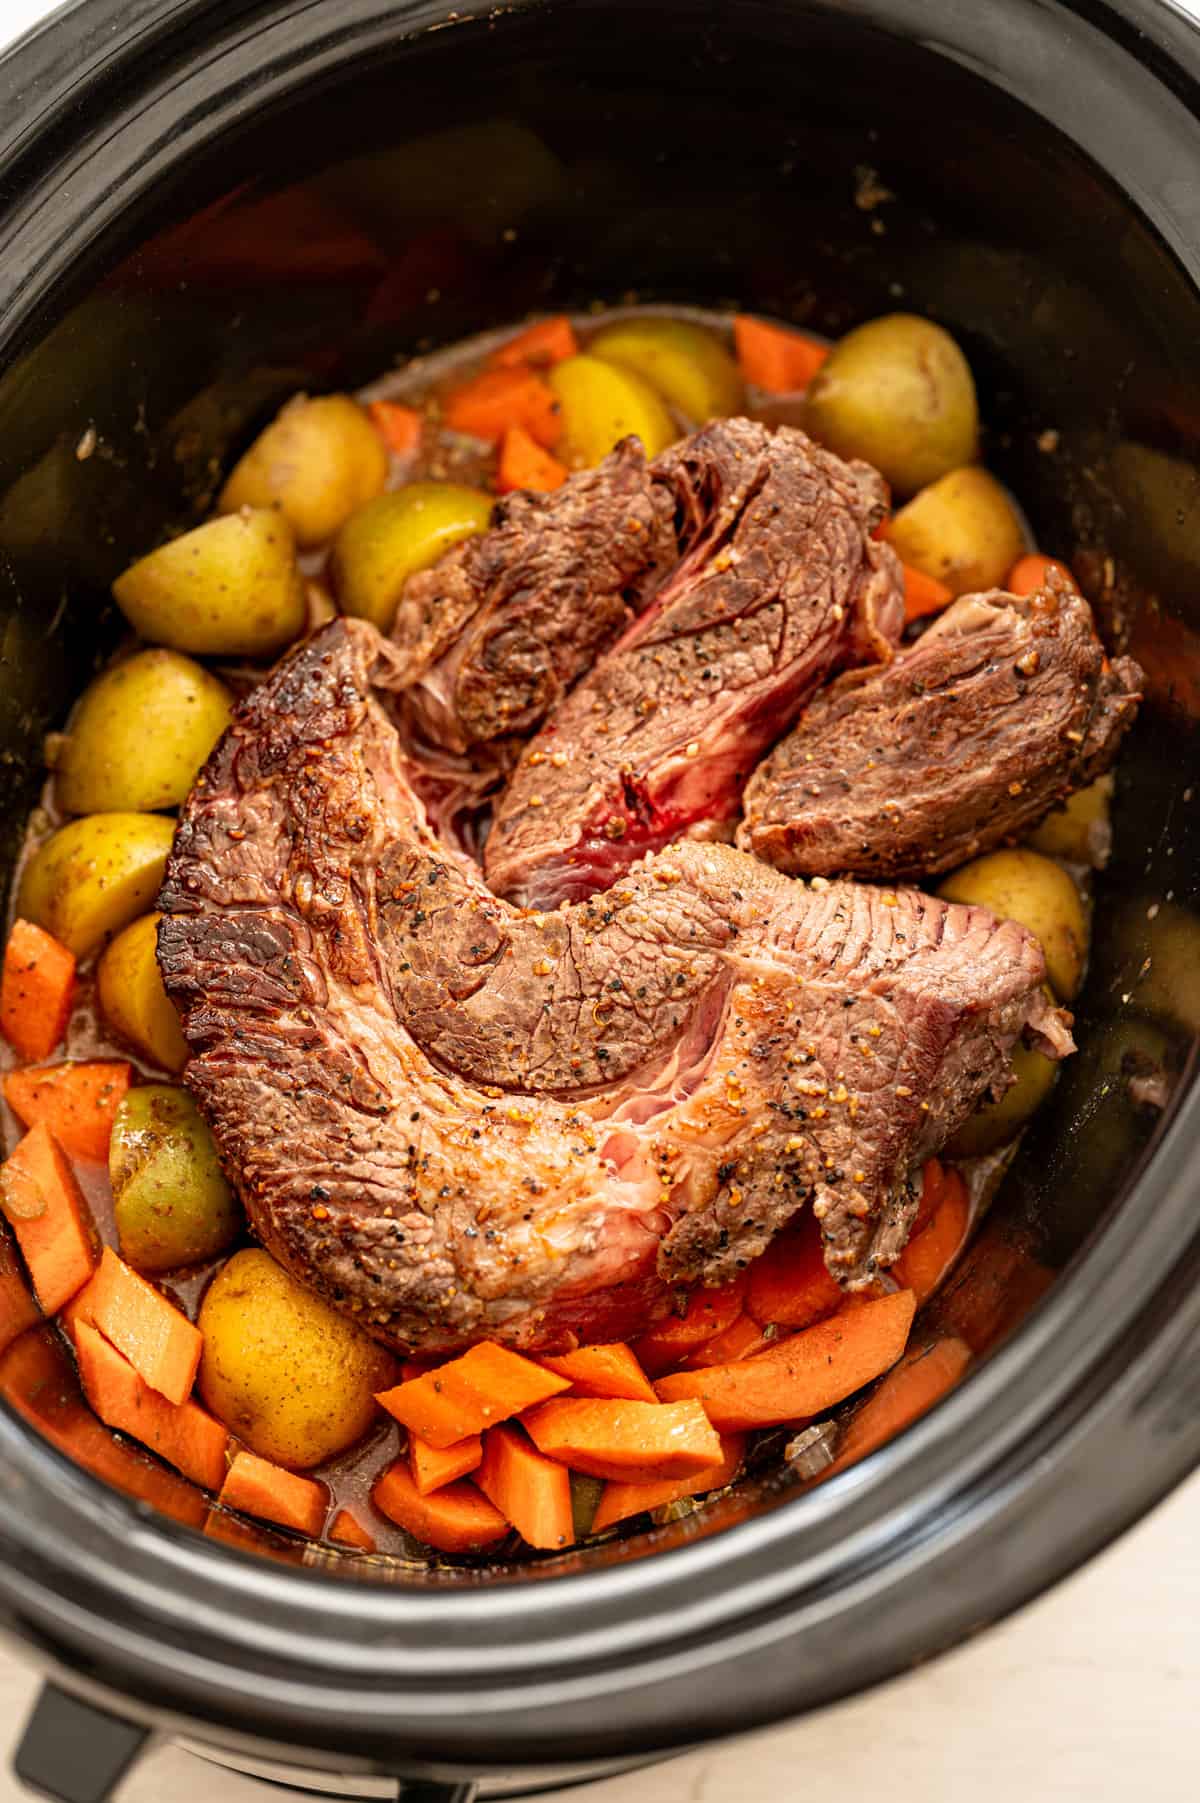 Crock pot pot roast over veggies in slow cooker.